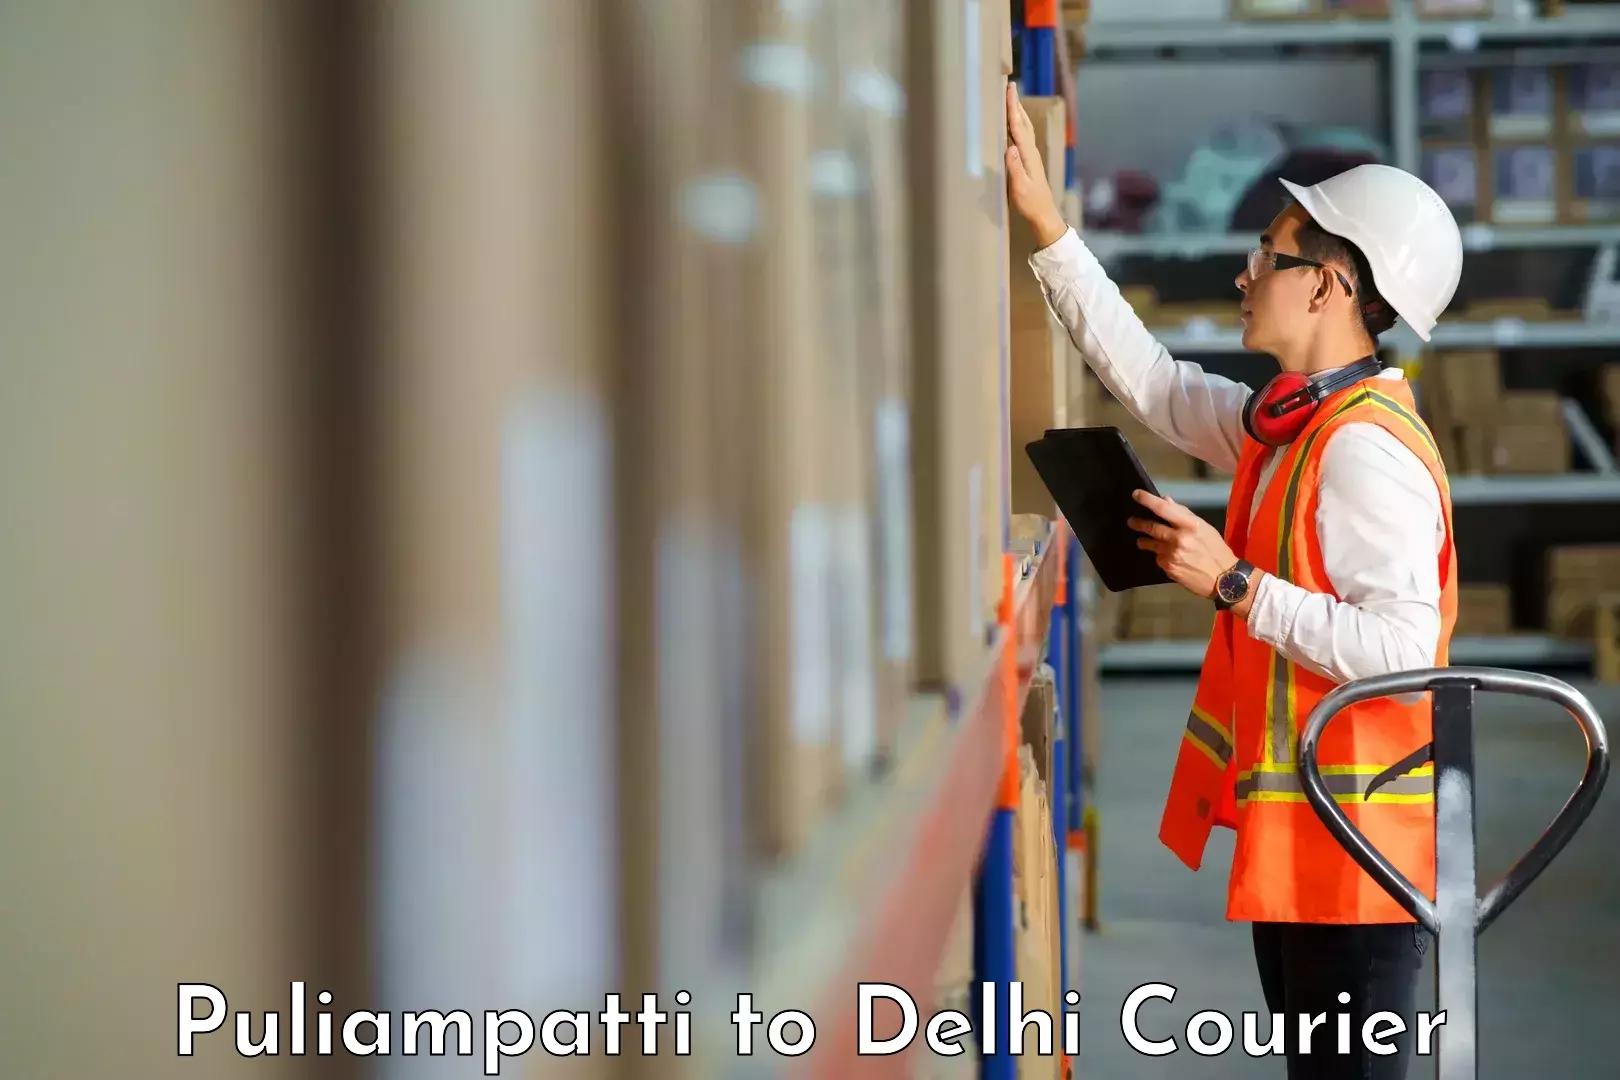 Business delivery service Puliampatti to East Delhi